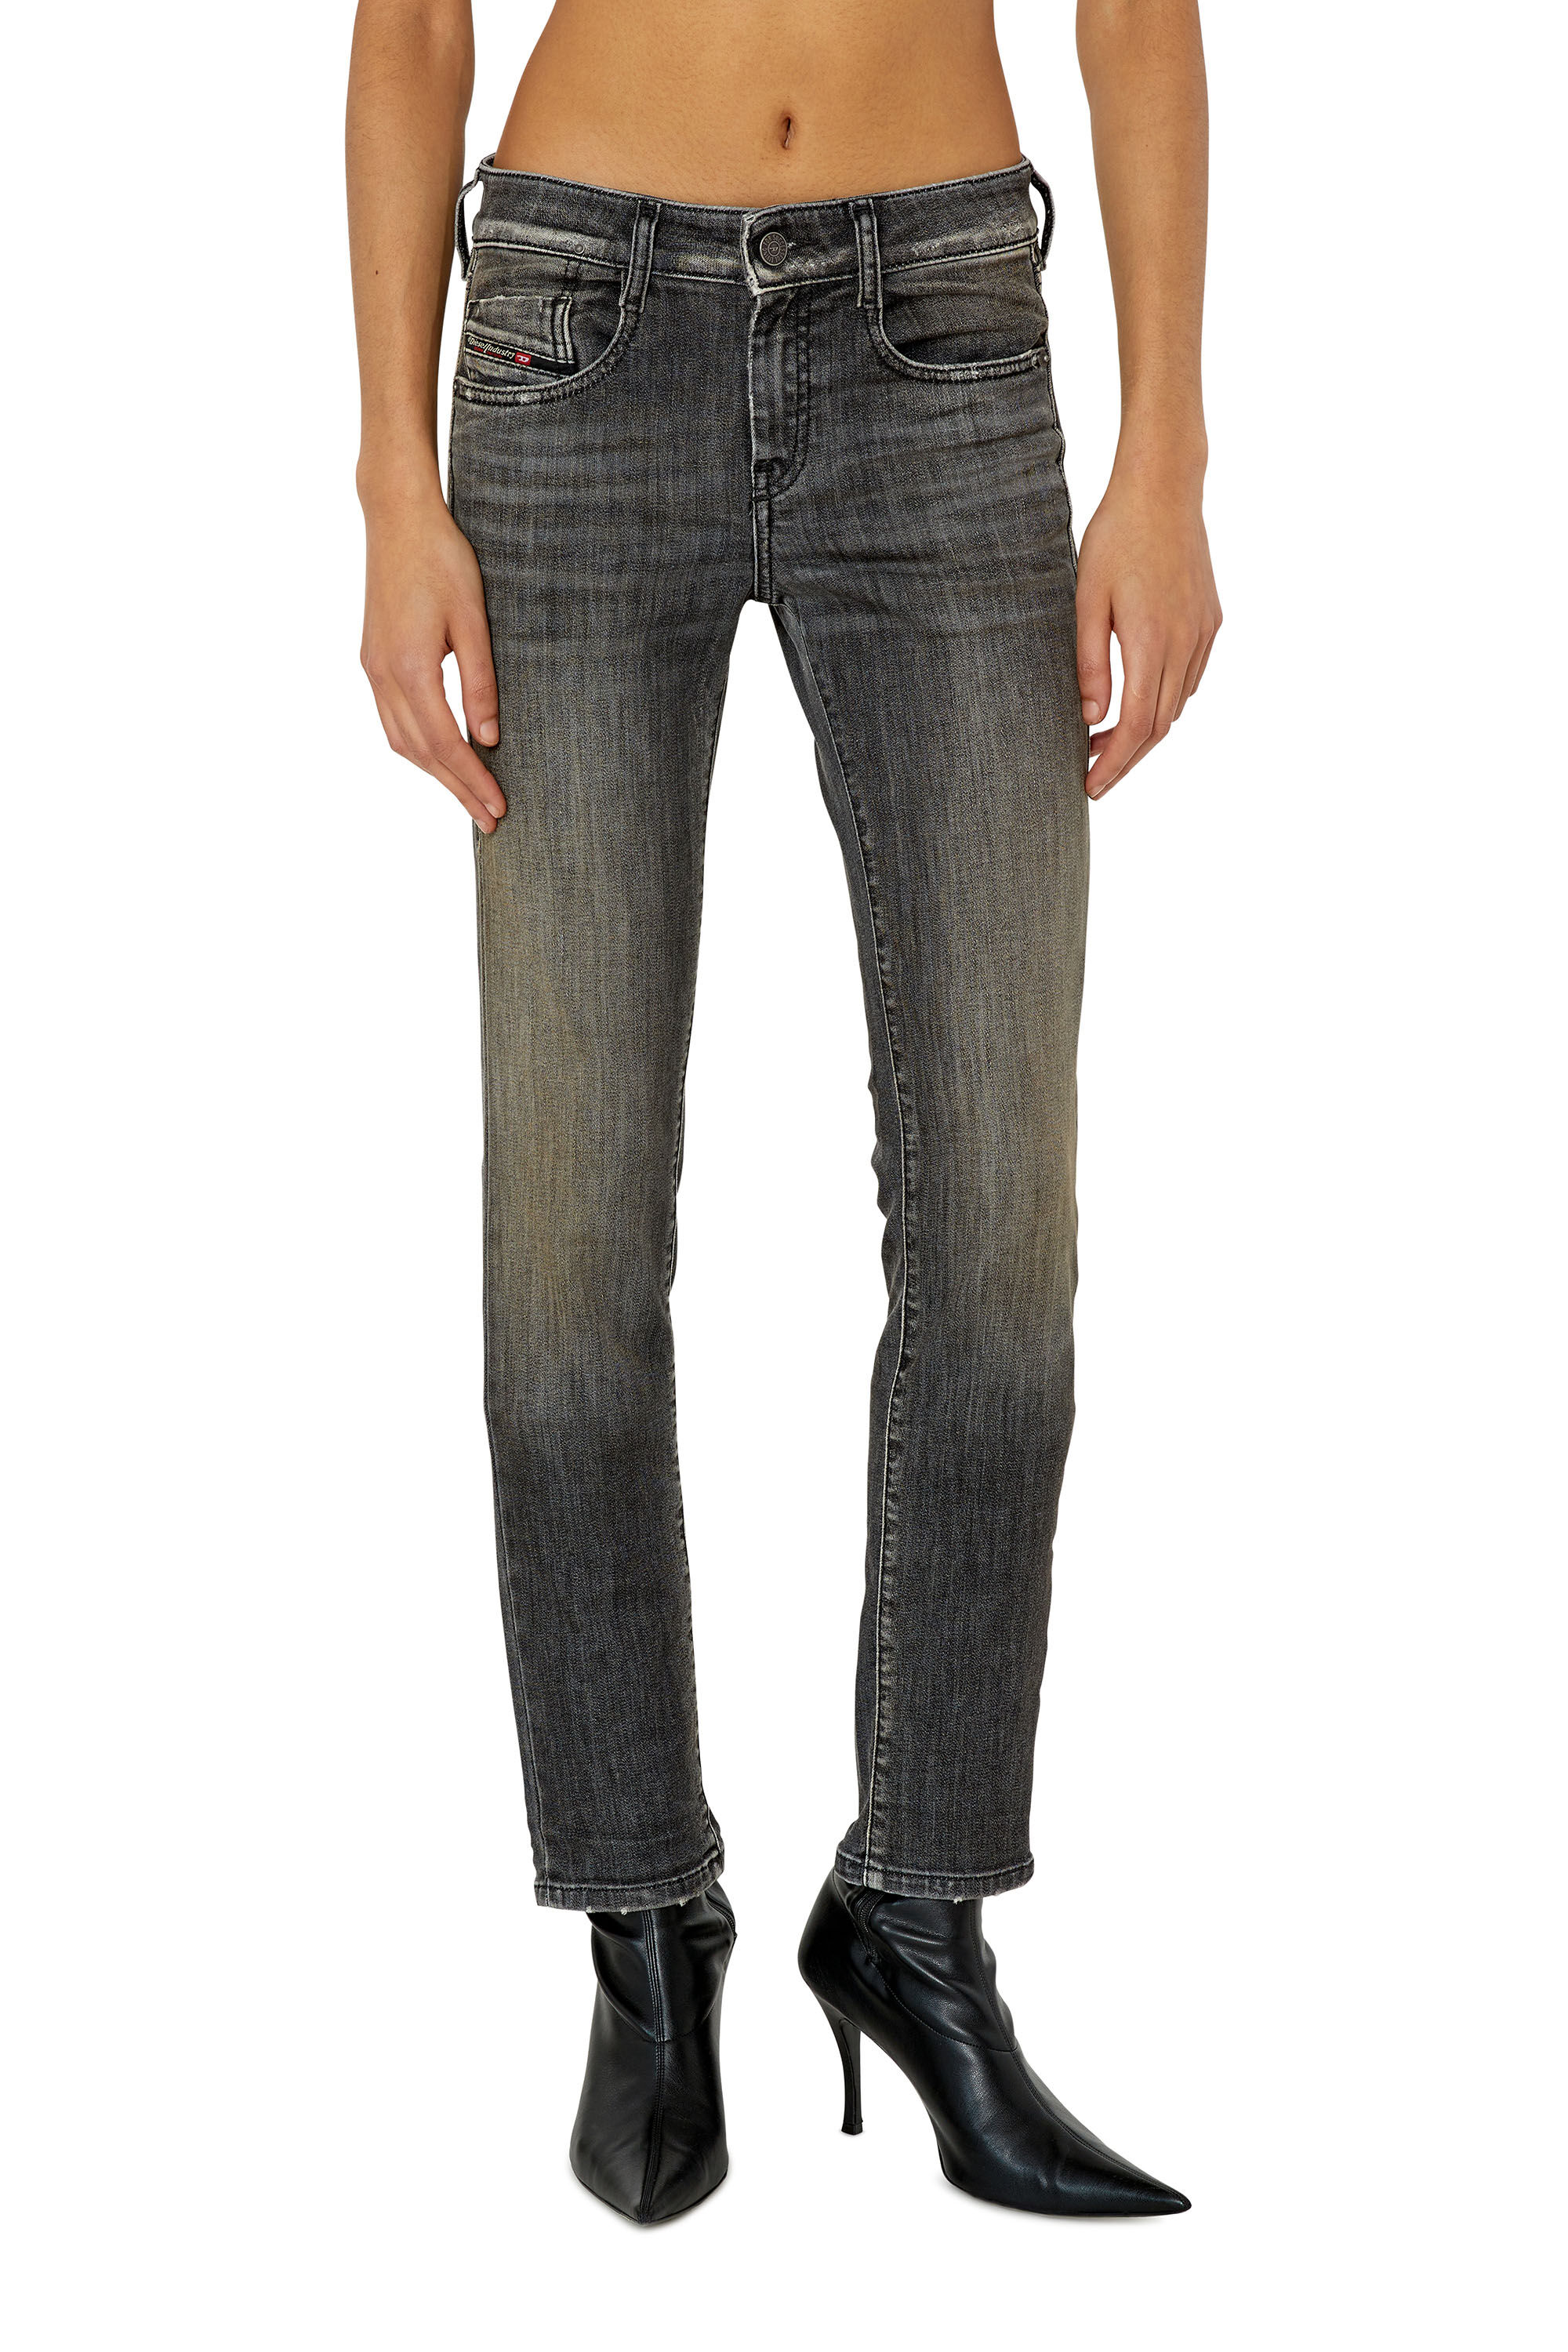 Diesel - D-Ollies JoggJeans® 09F01 Slim, Black/Dark grey - Image 3